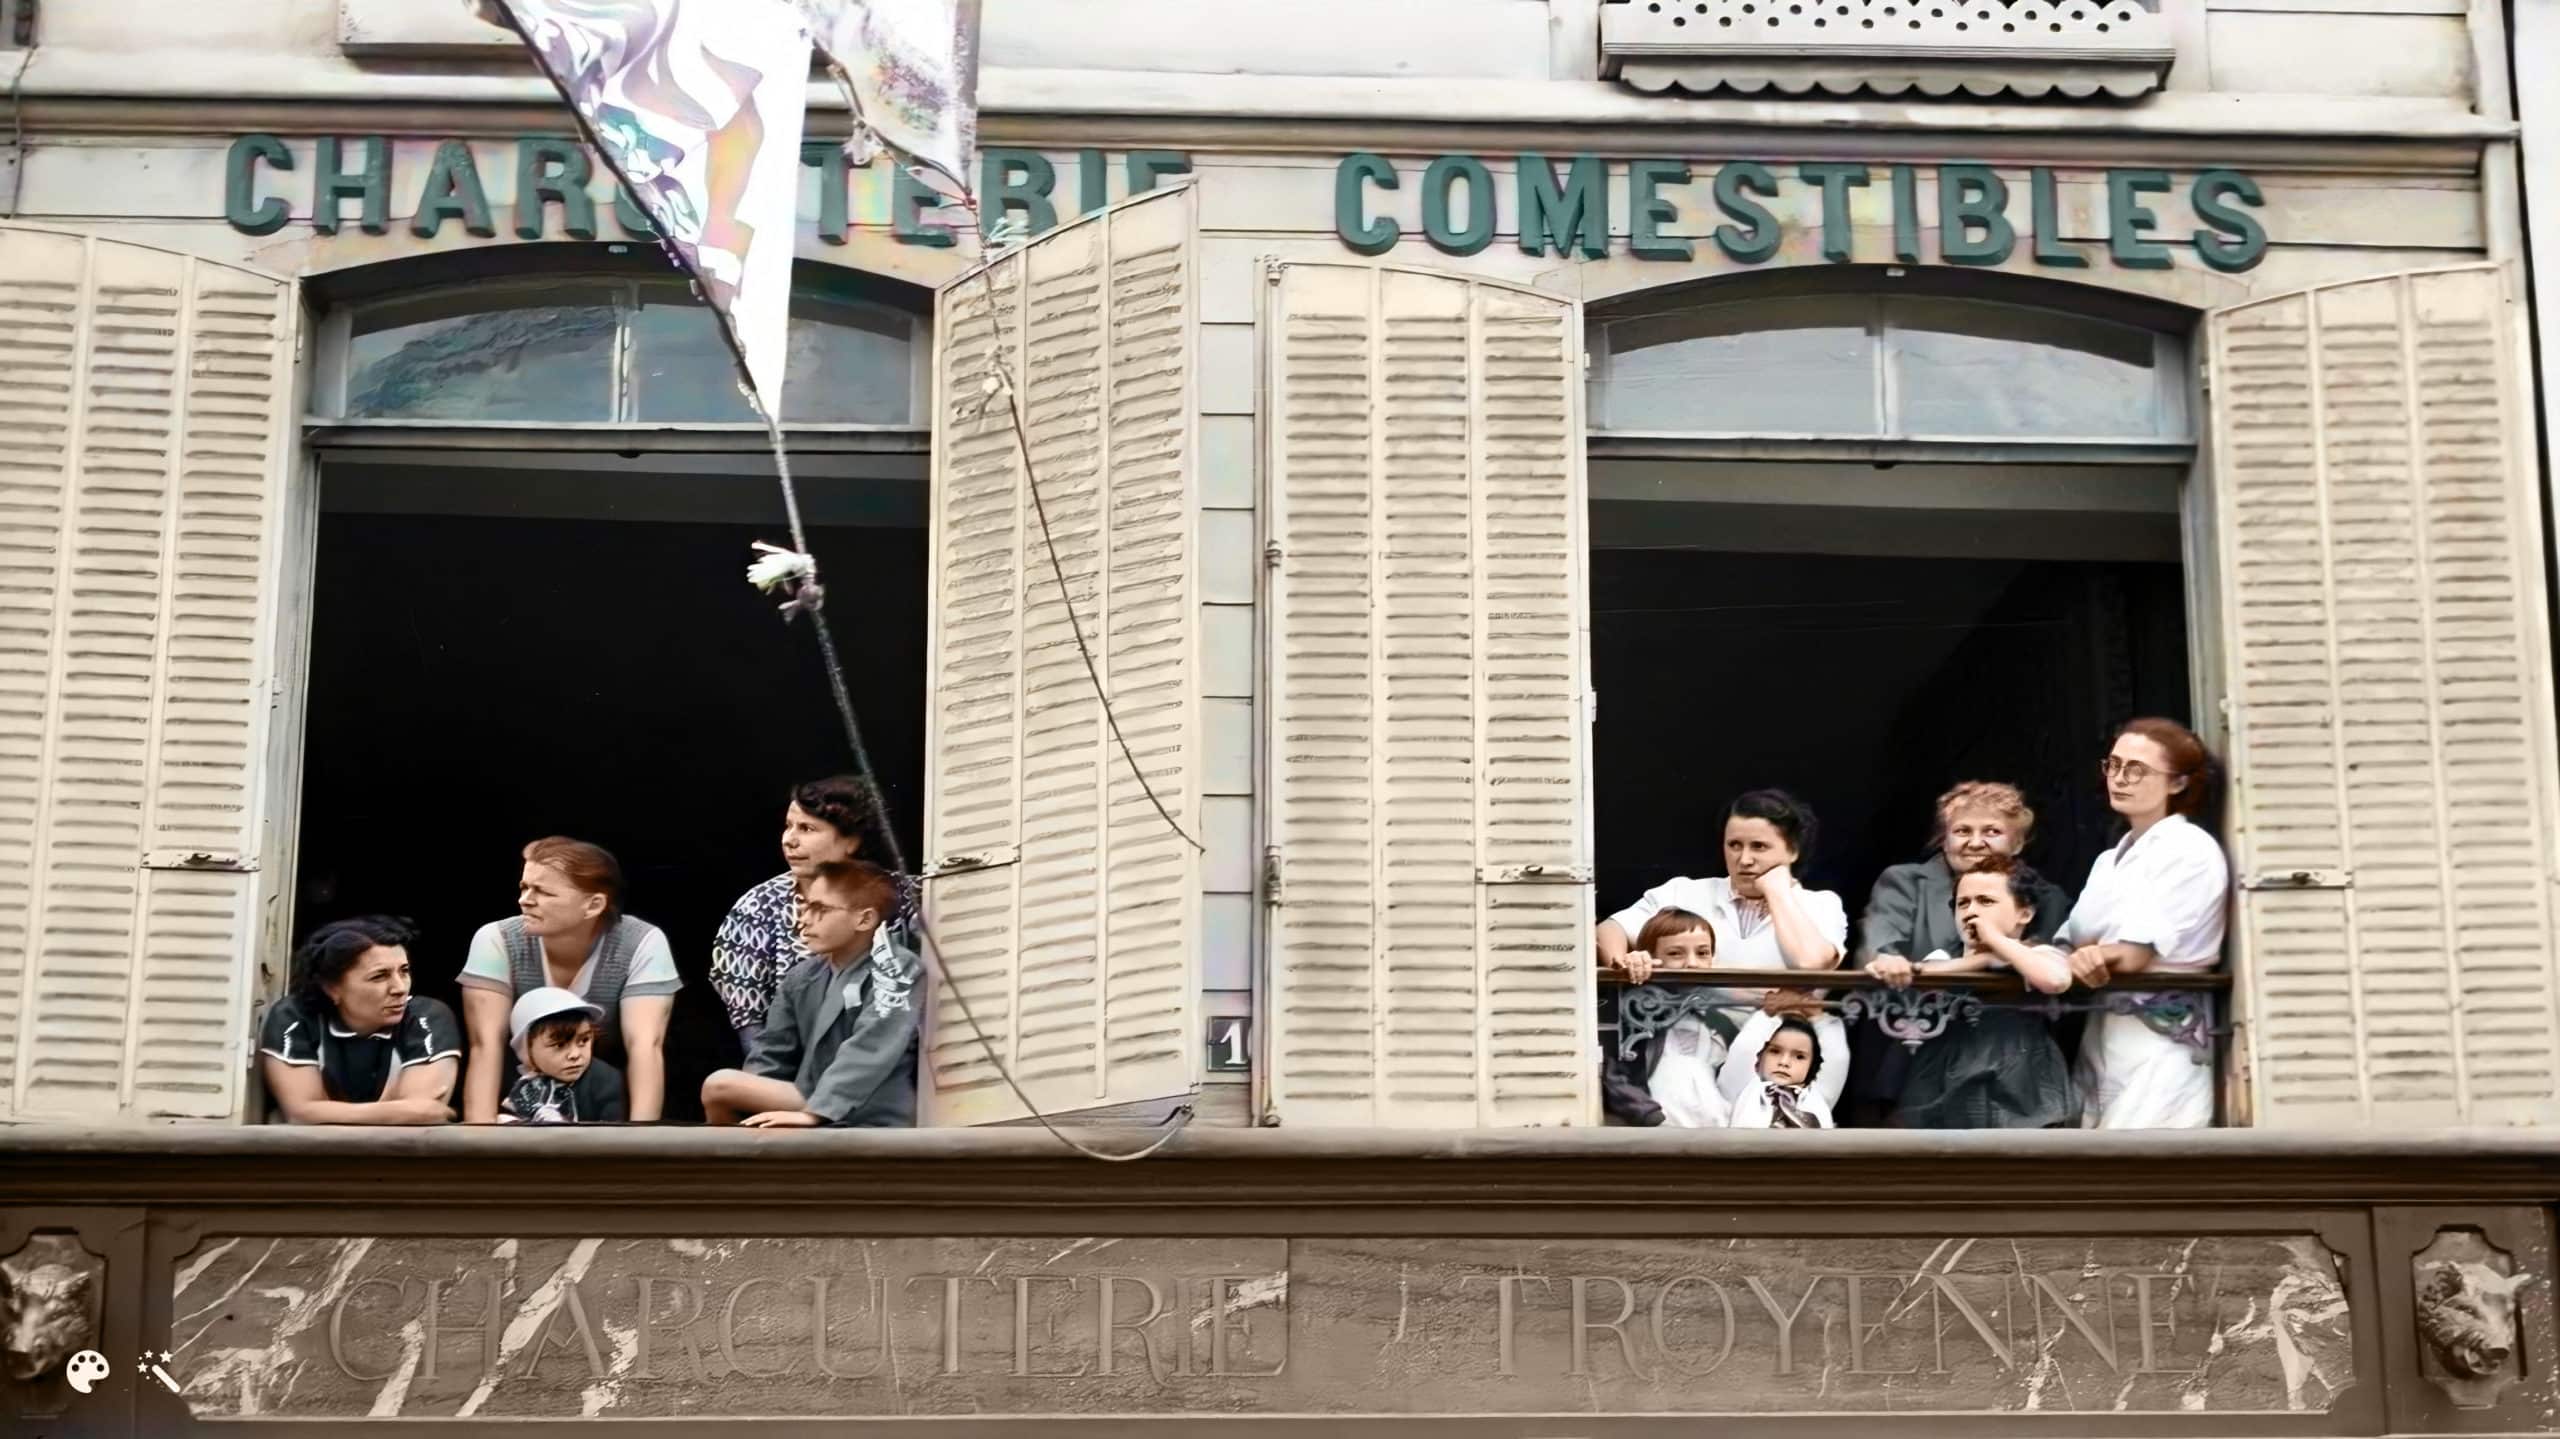 Pierre Boillon i jego rodzina obserwują jak Tour de France przejeżdża obok ich przedsiębiorstwa w Bar-sur-Aube. Zdjęcie dzięki uprzejmości Pierre Boillon, pokolorowane i ulepszone przez MyHeritage